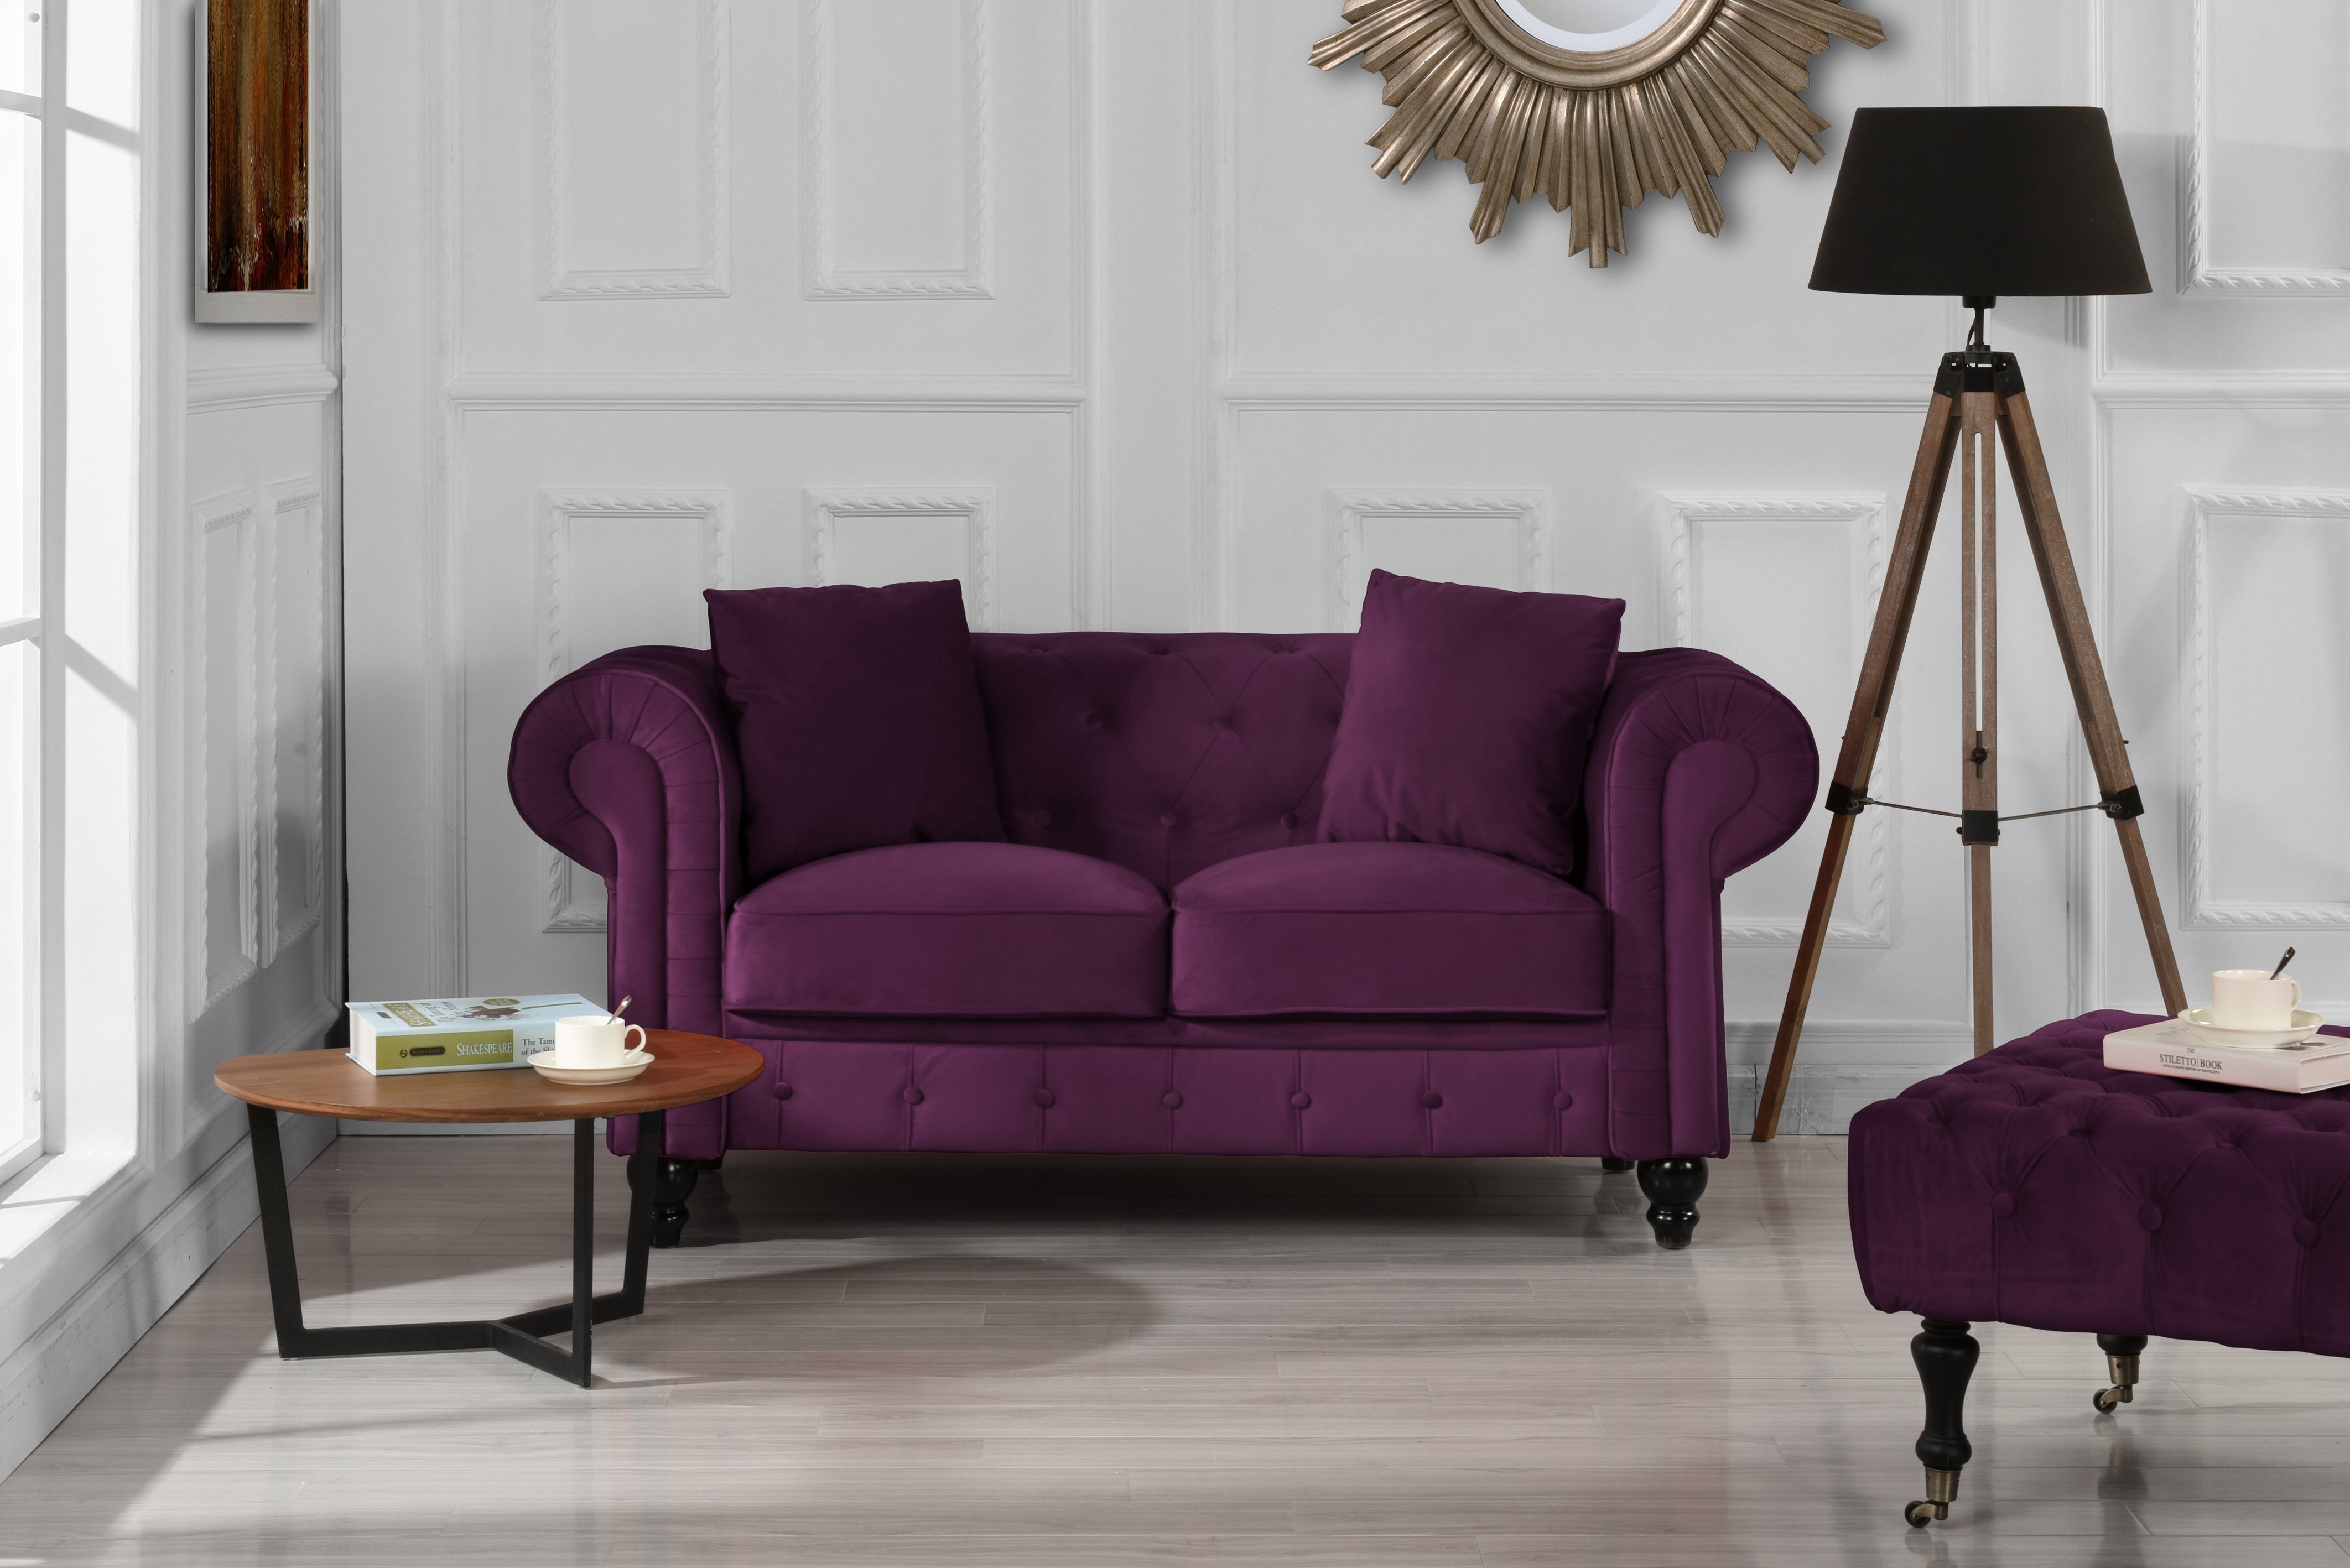 Modern Chesterfield Loveseat Sofa Velvet Upholstered Love Seat Couch